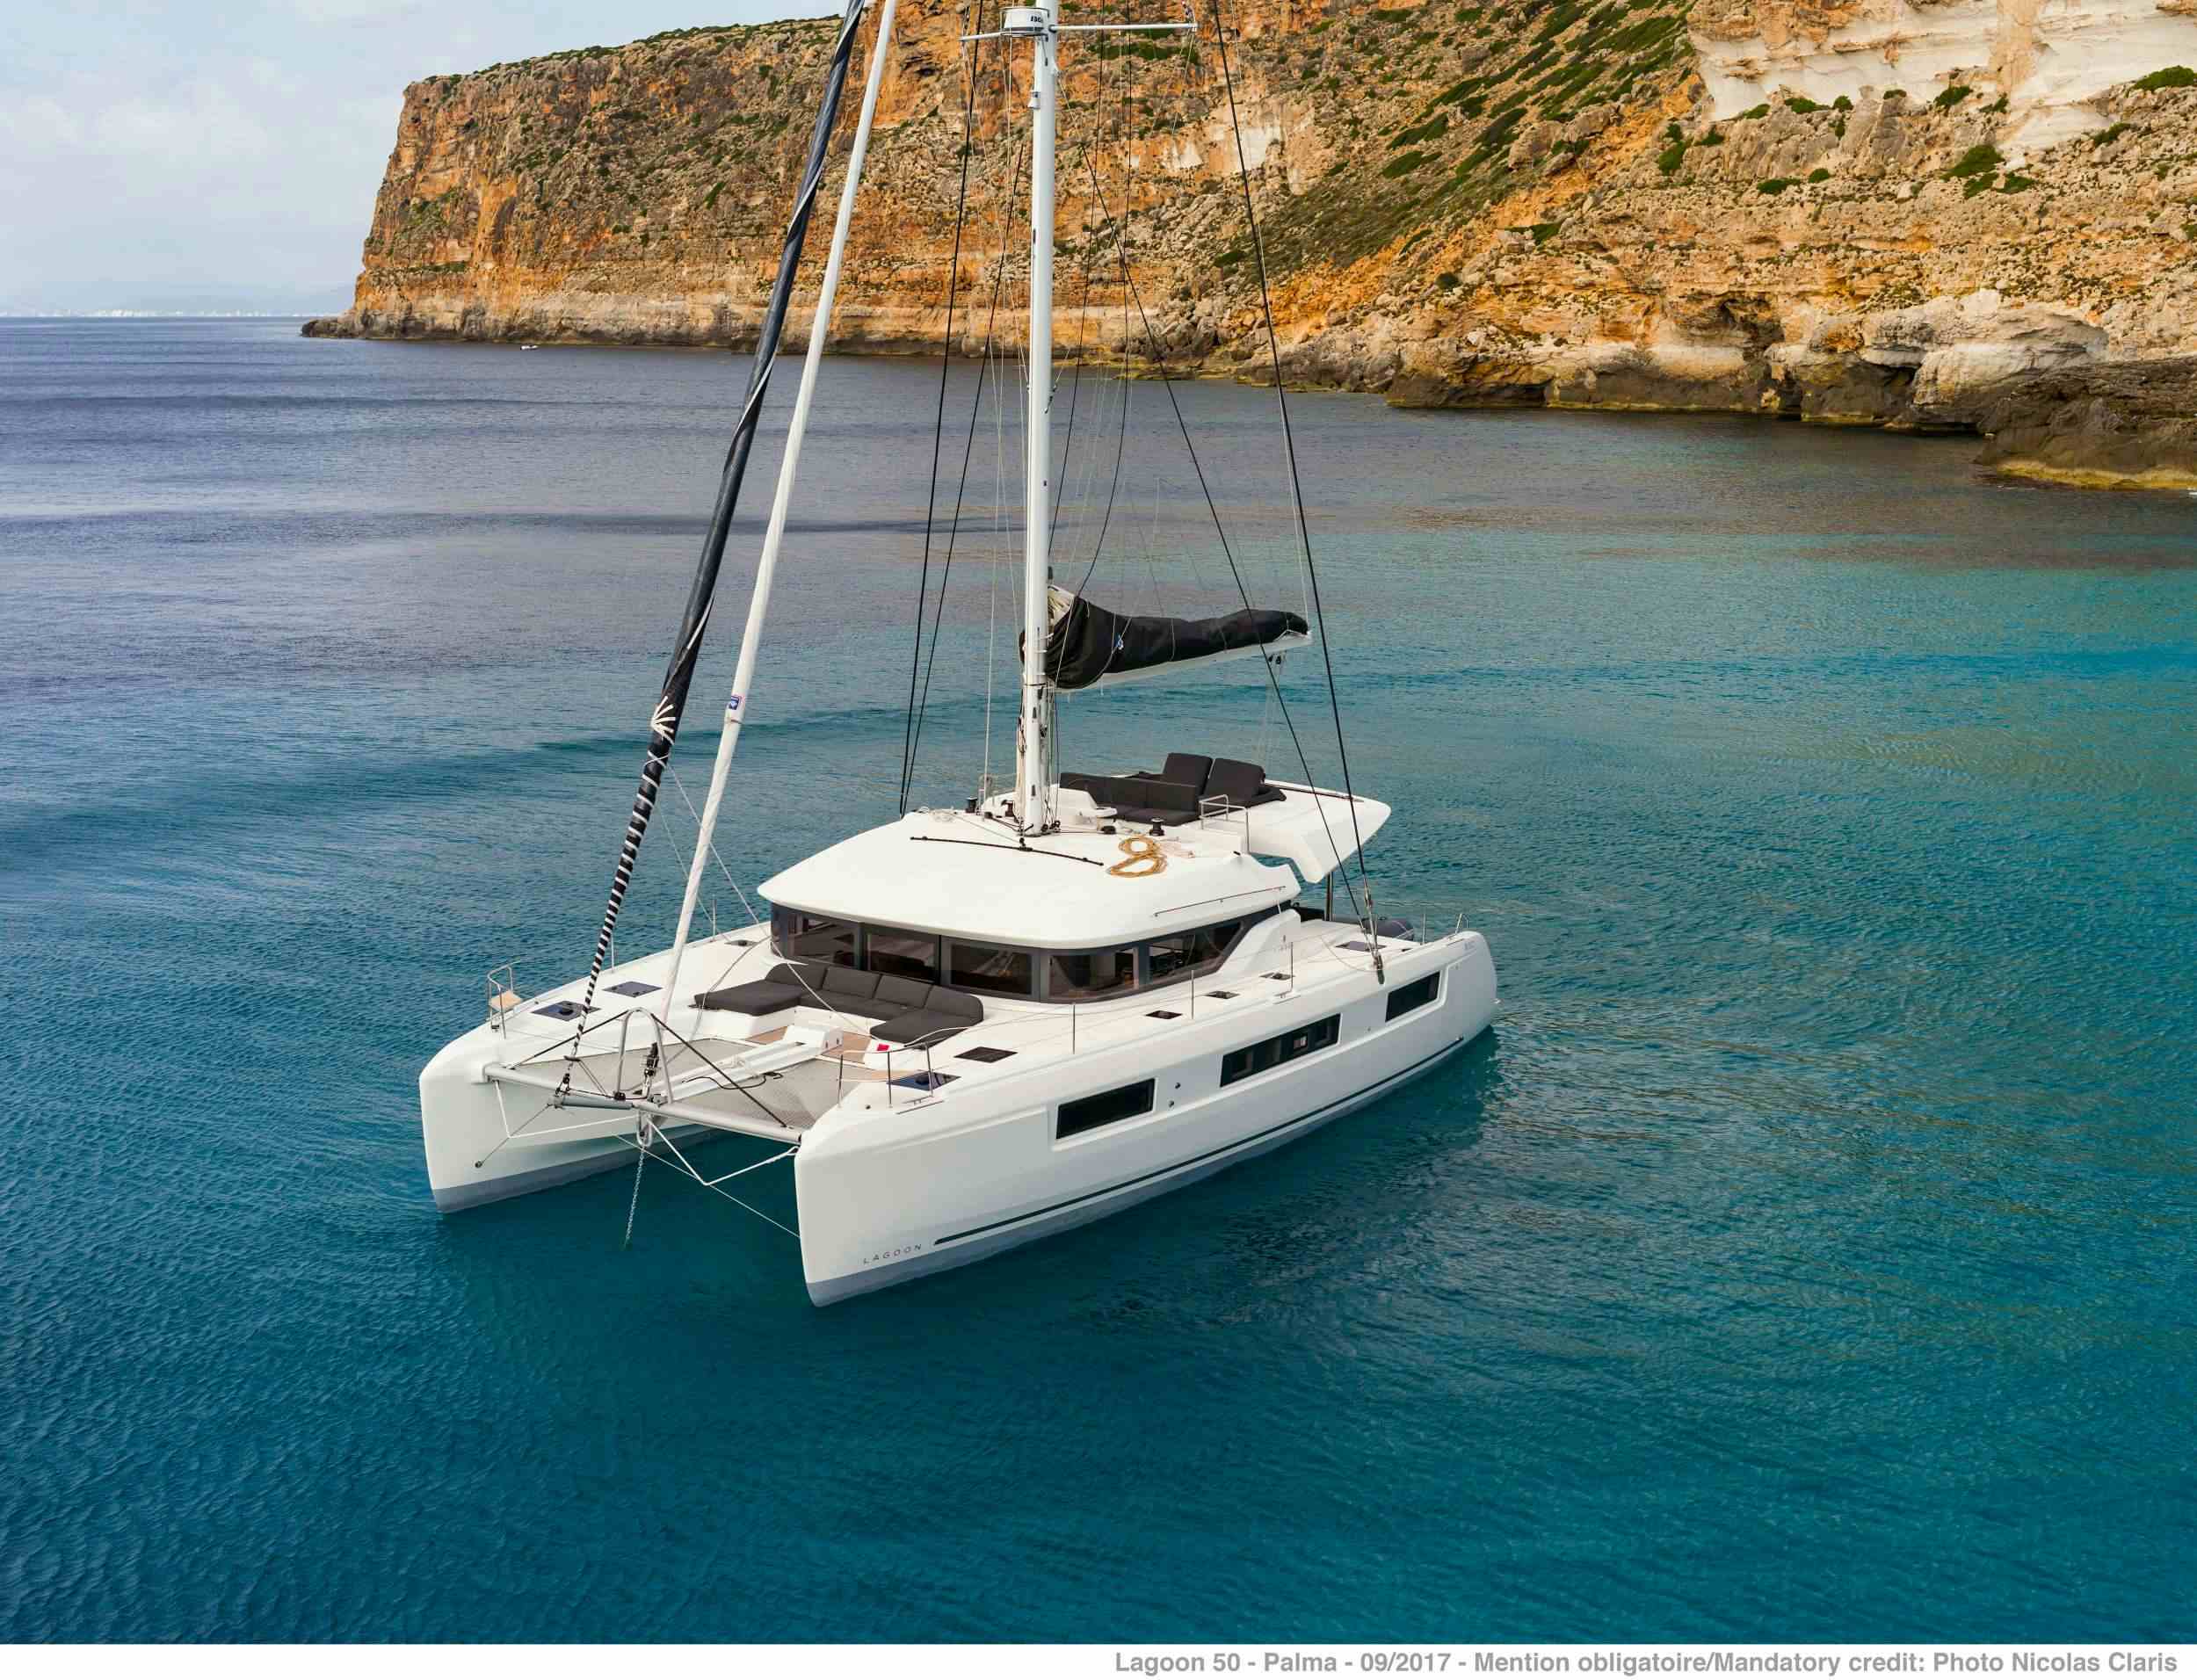 ONEIDA 2 - Yacht Charter Birmingham & Boat hire in Greece 1